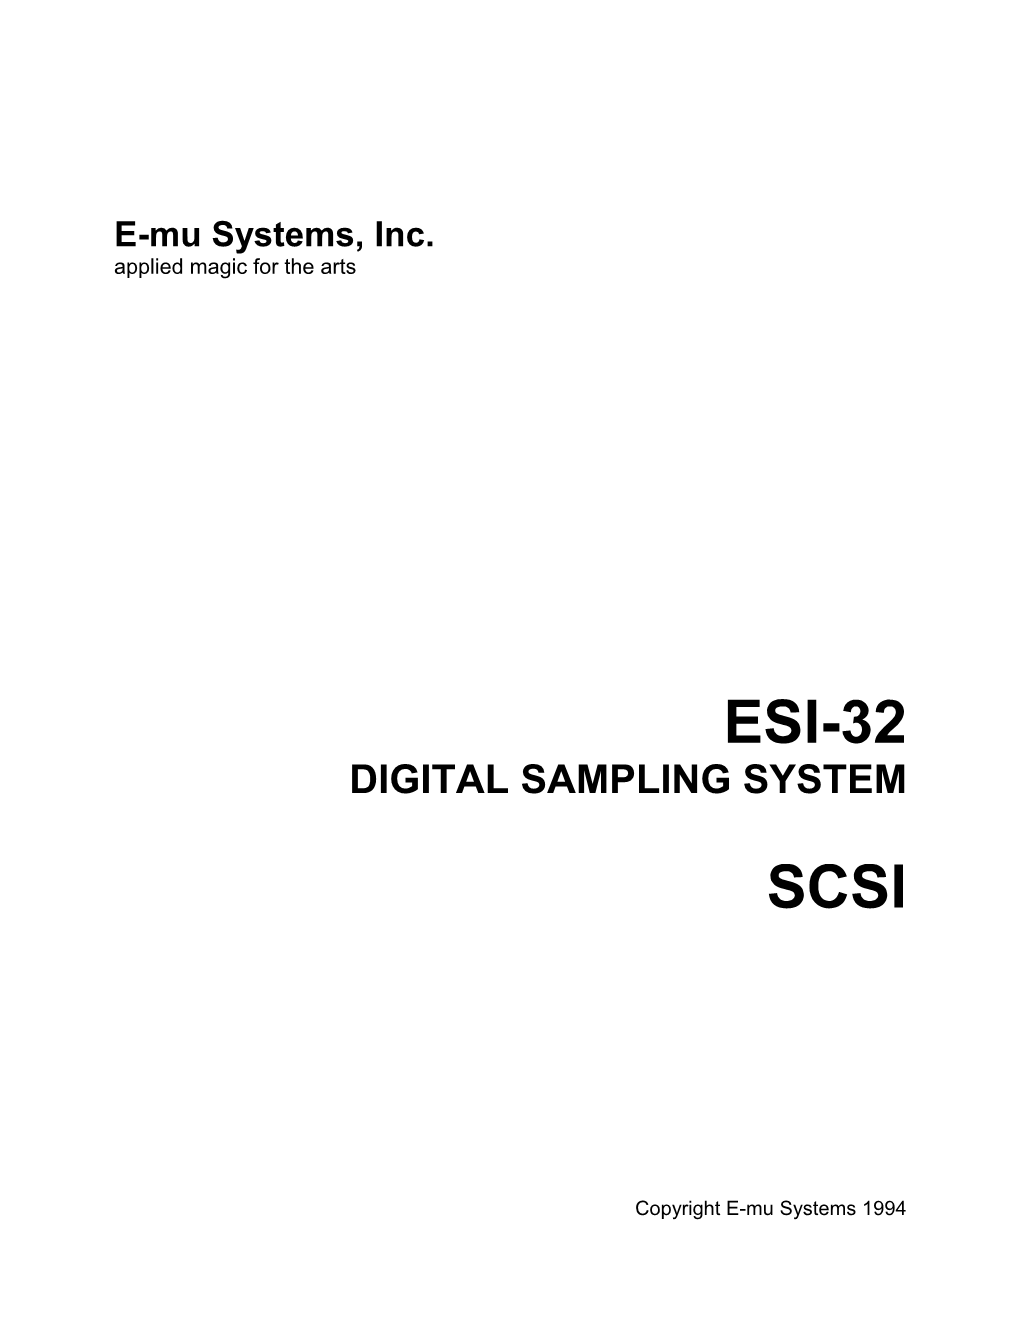 Digital Sampling System